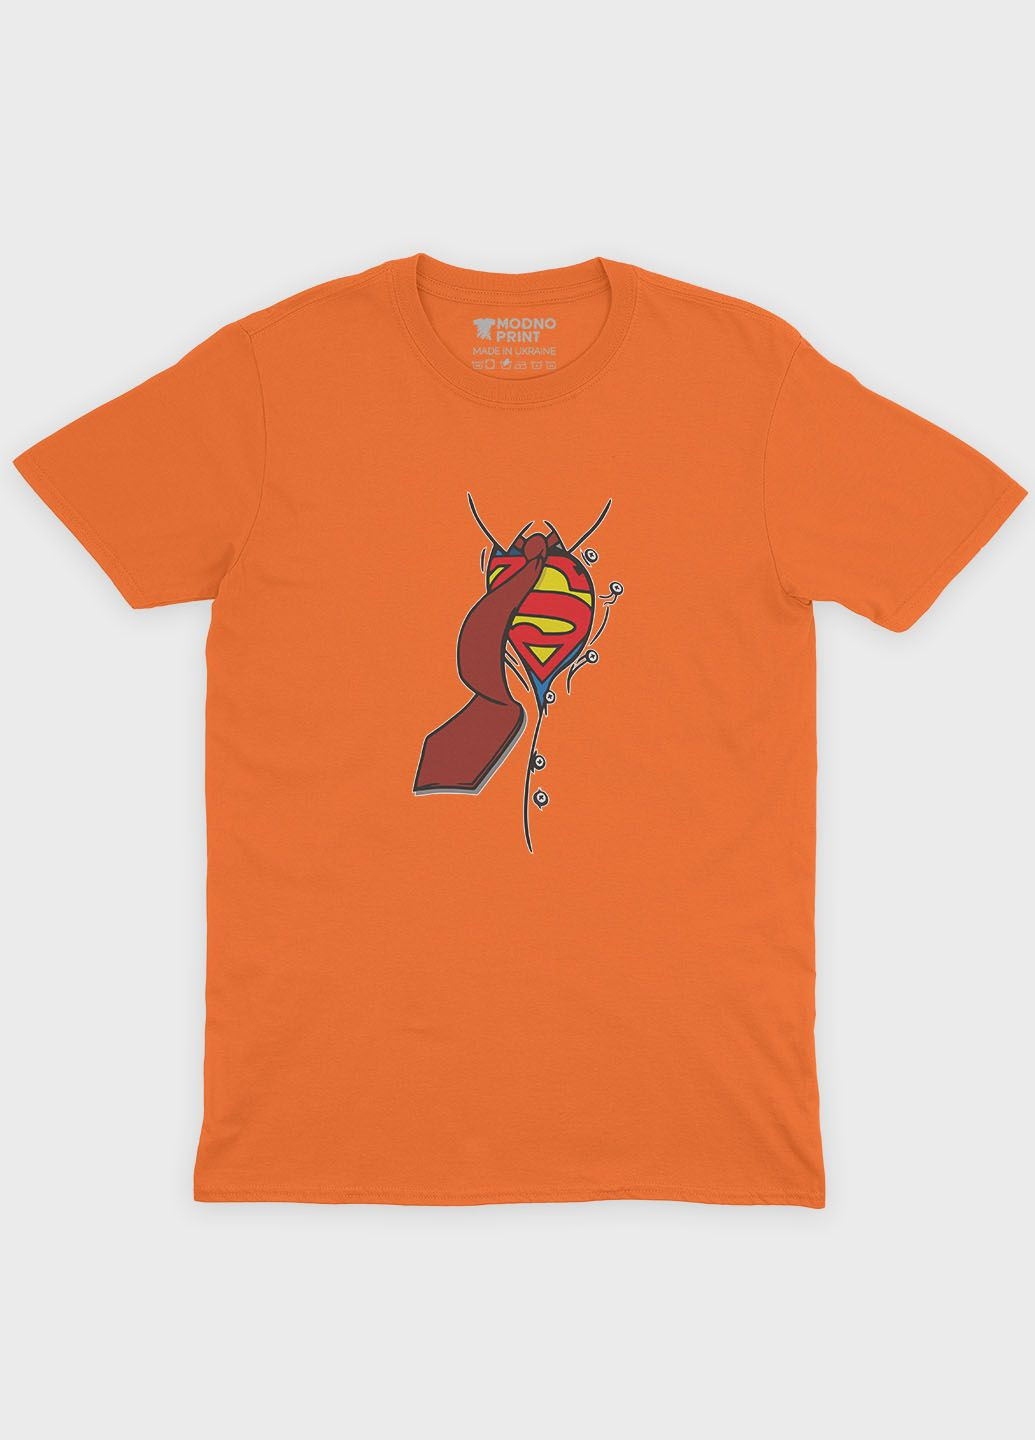 Оранжевая демисезонная футболка для мальчика с принтом супергероя - супермен (ts001-1-ora-006-009-002-b) Modno